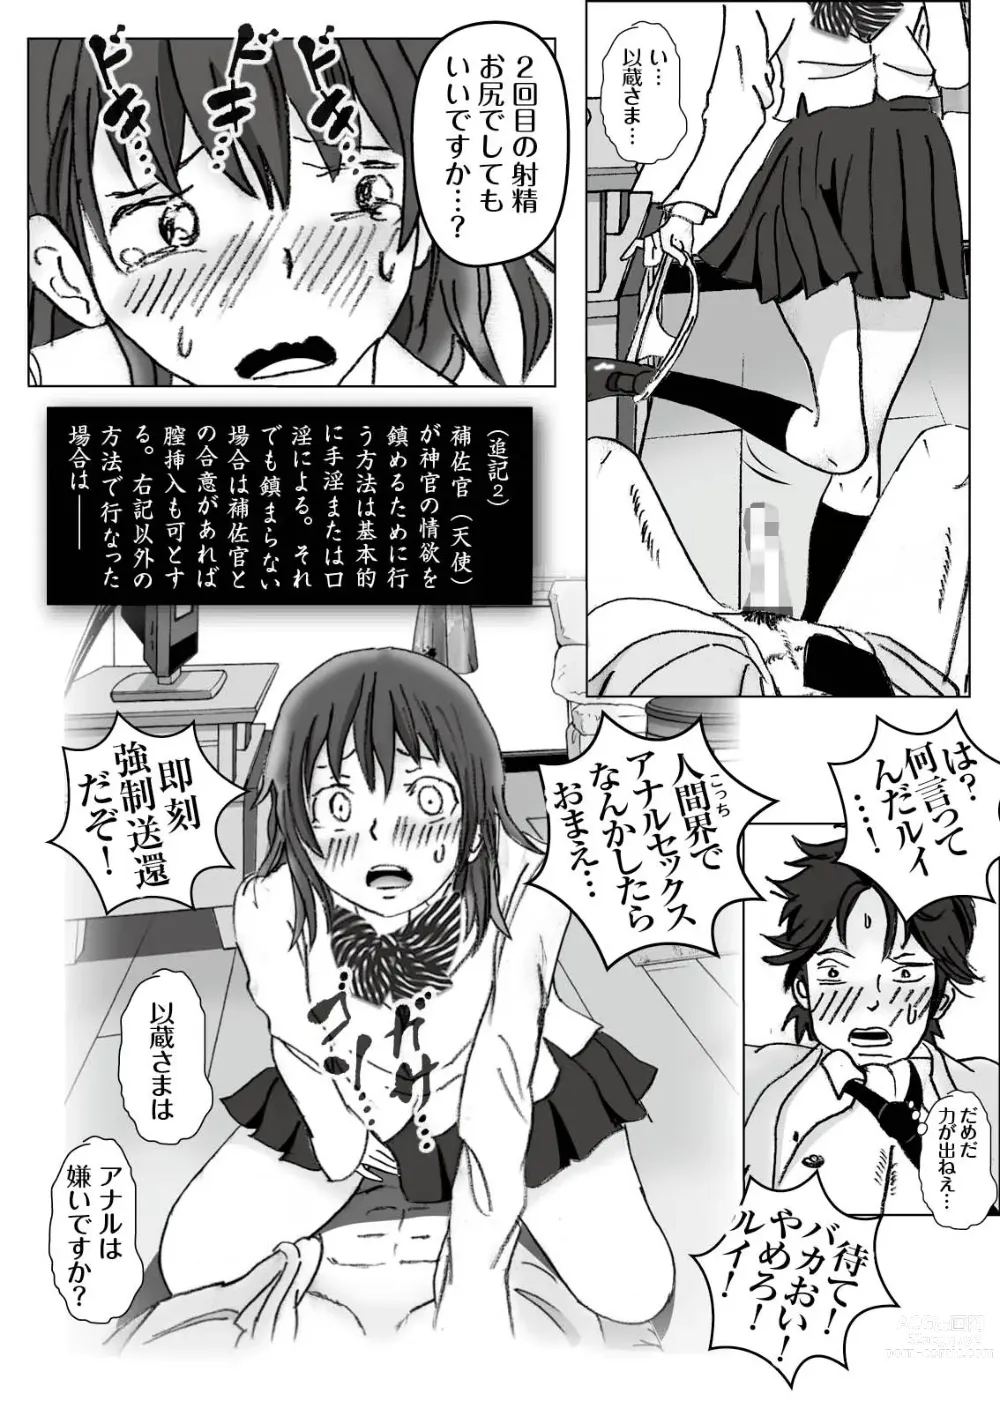 Page 42 of doujinshi Kochira Tengoku! Kinshin Soukan manen Boushika!